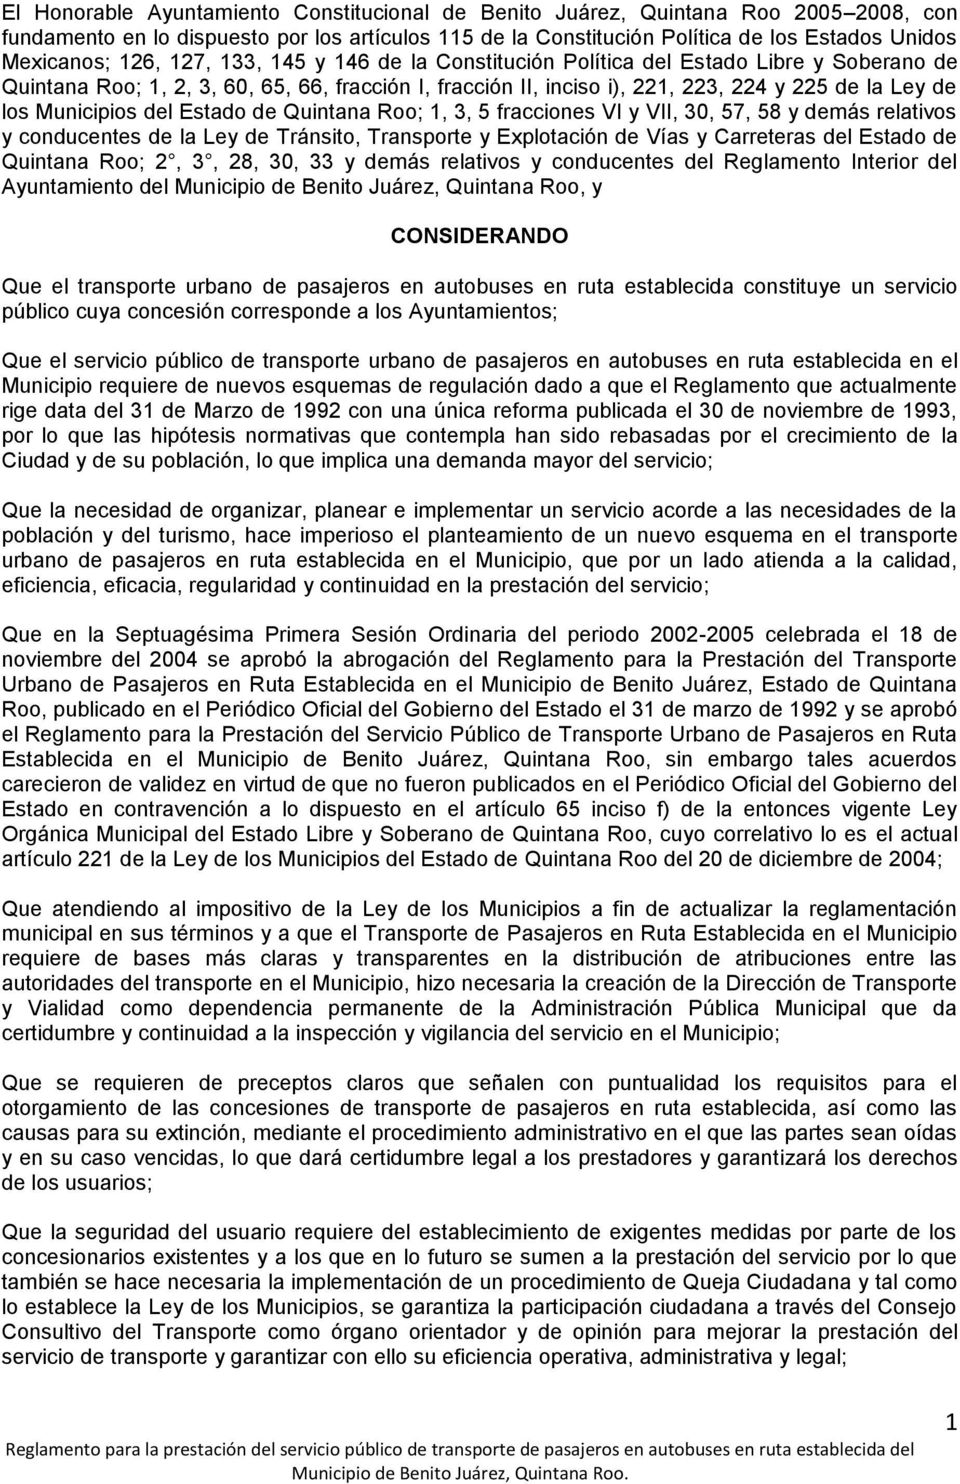 Municipios del Estado de Quintana Roo; 1, 3, 5 fracciones VI y VII, 30, 57, 58 y demás relativos y conducentes de la Ley de Tránsito, Transporte y Explotación de Vías y Carreteras del Estado de